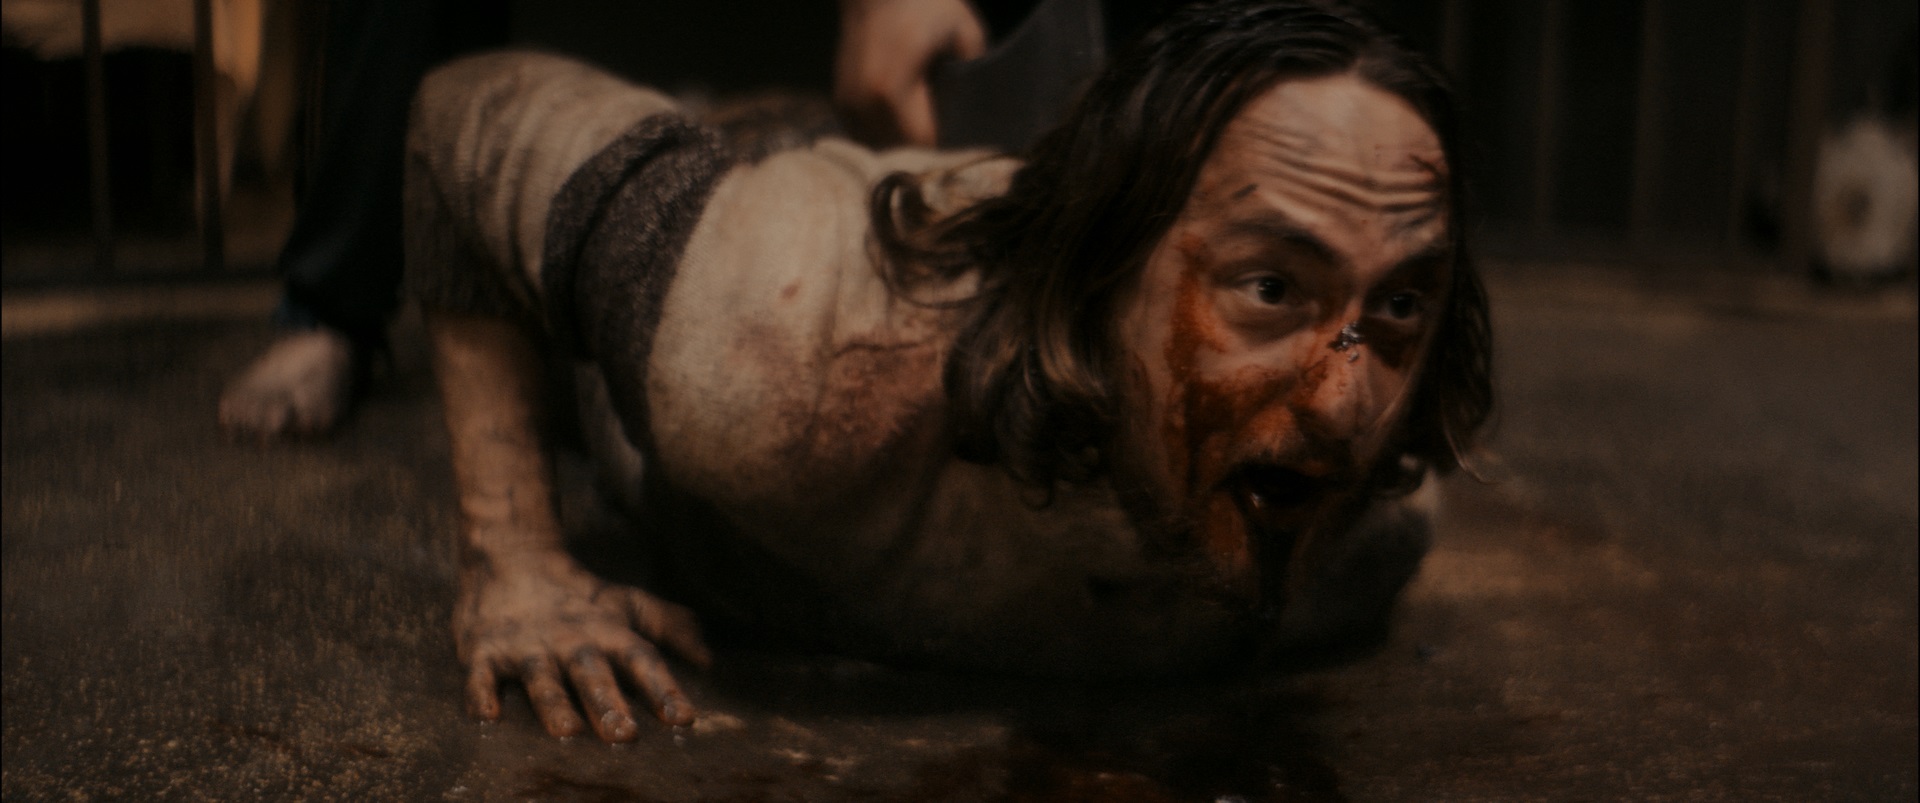 Esce il 1 agosto ‘The Well’ il nuovo horror di Federico Zampaglione, online il trailer